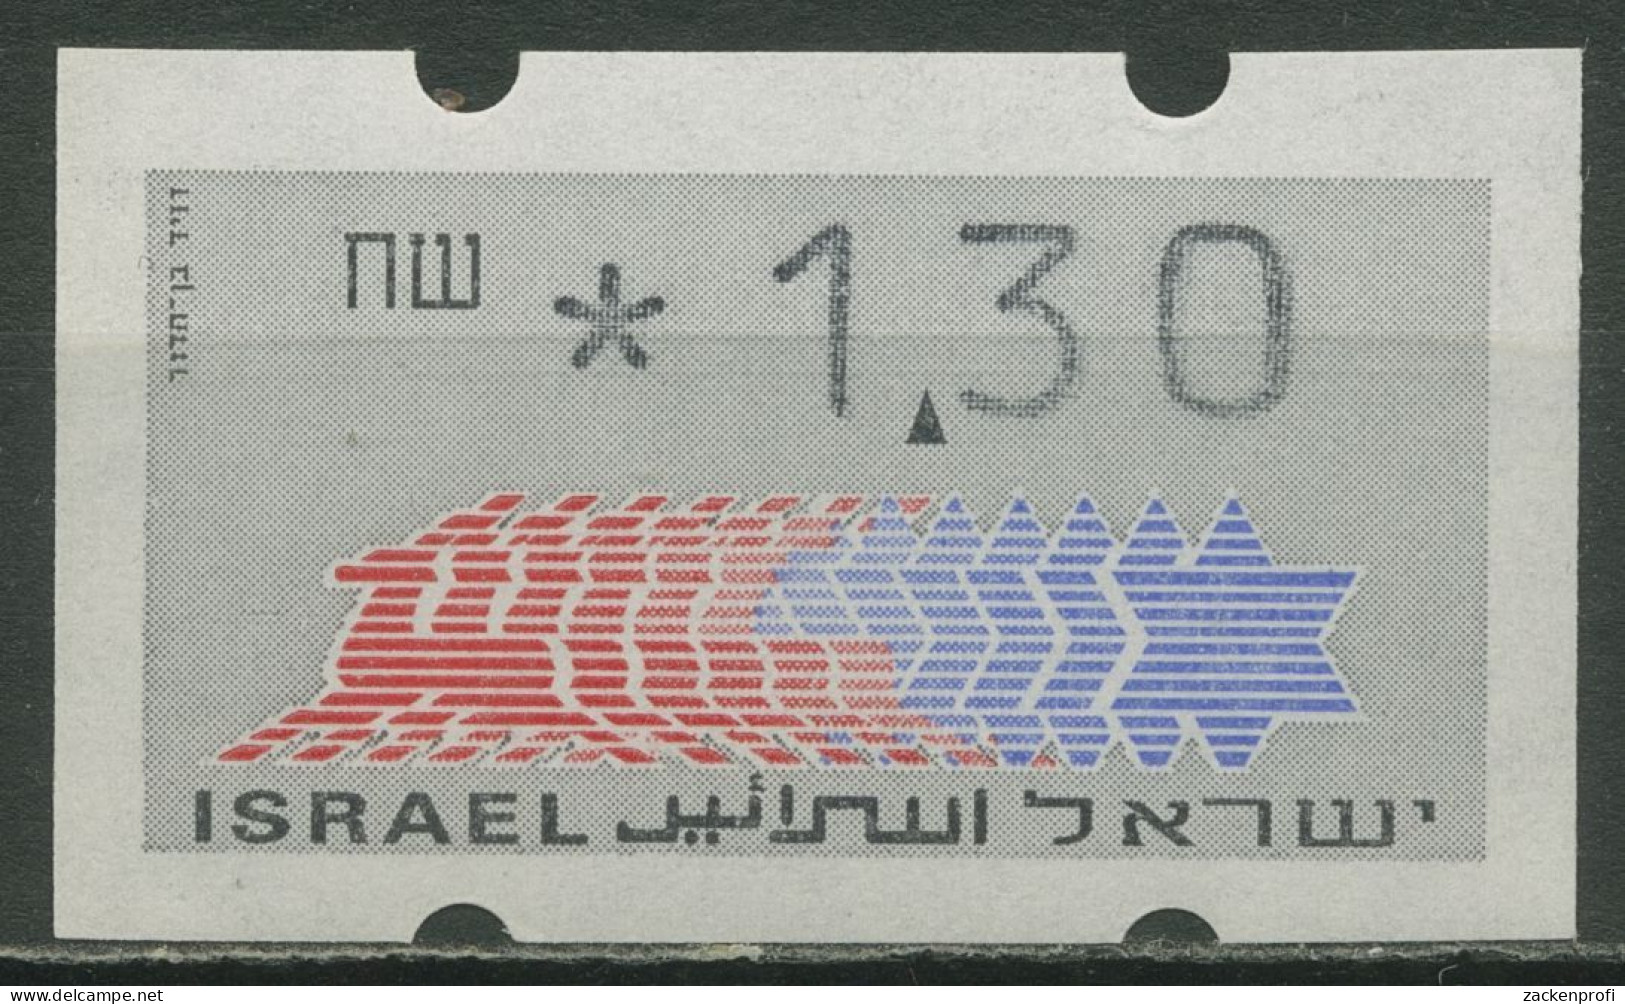 Israel ATM 1990 Hirsch Einzelwert, ATM 2.3 Mit Nr. Postfrisch - Franking Labels